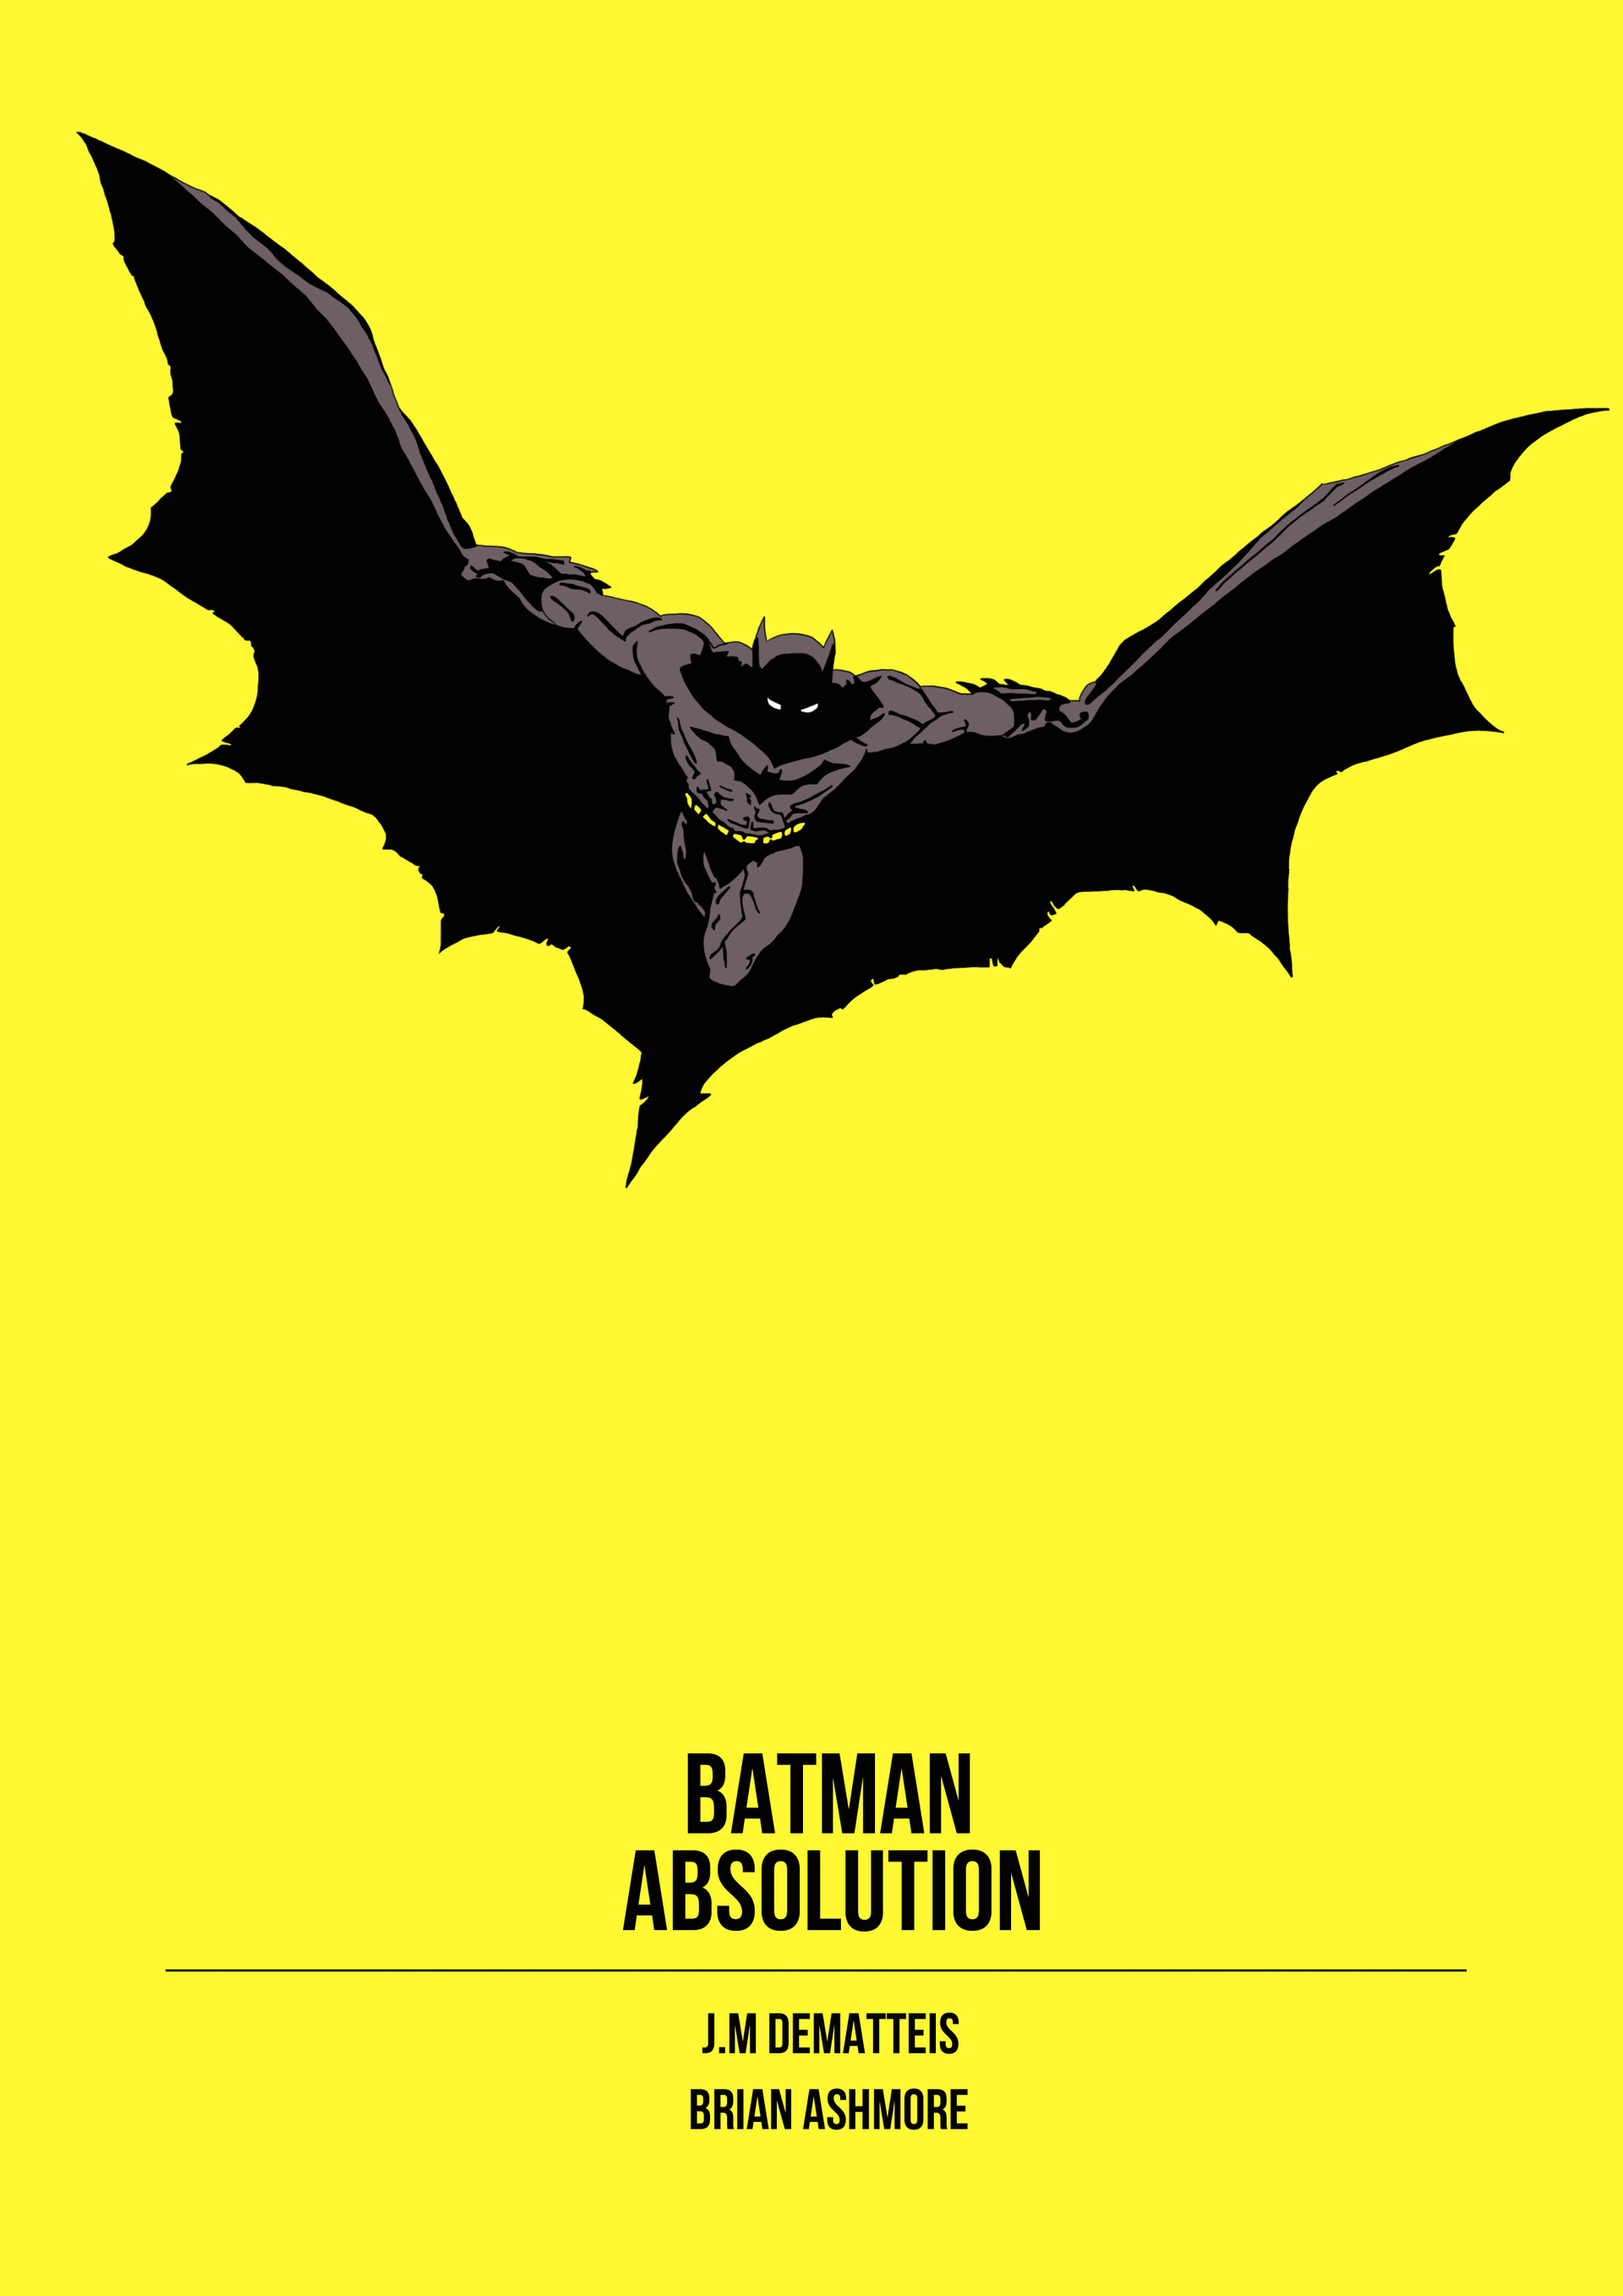 Jack Bennett - Batman - Absolution Cover Redesign